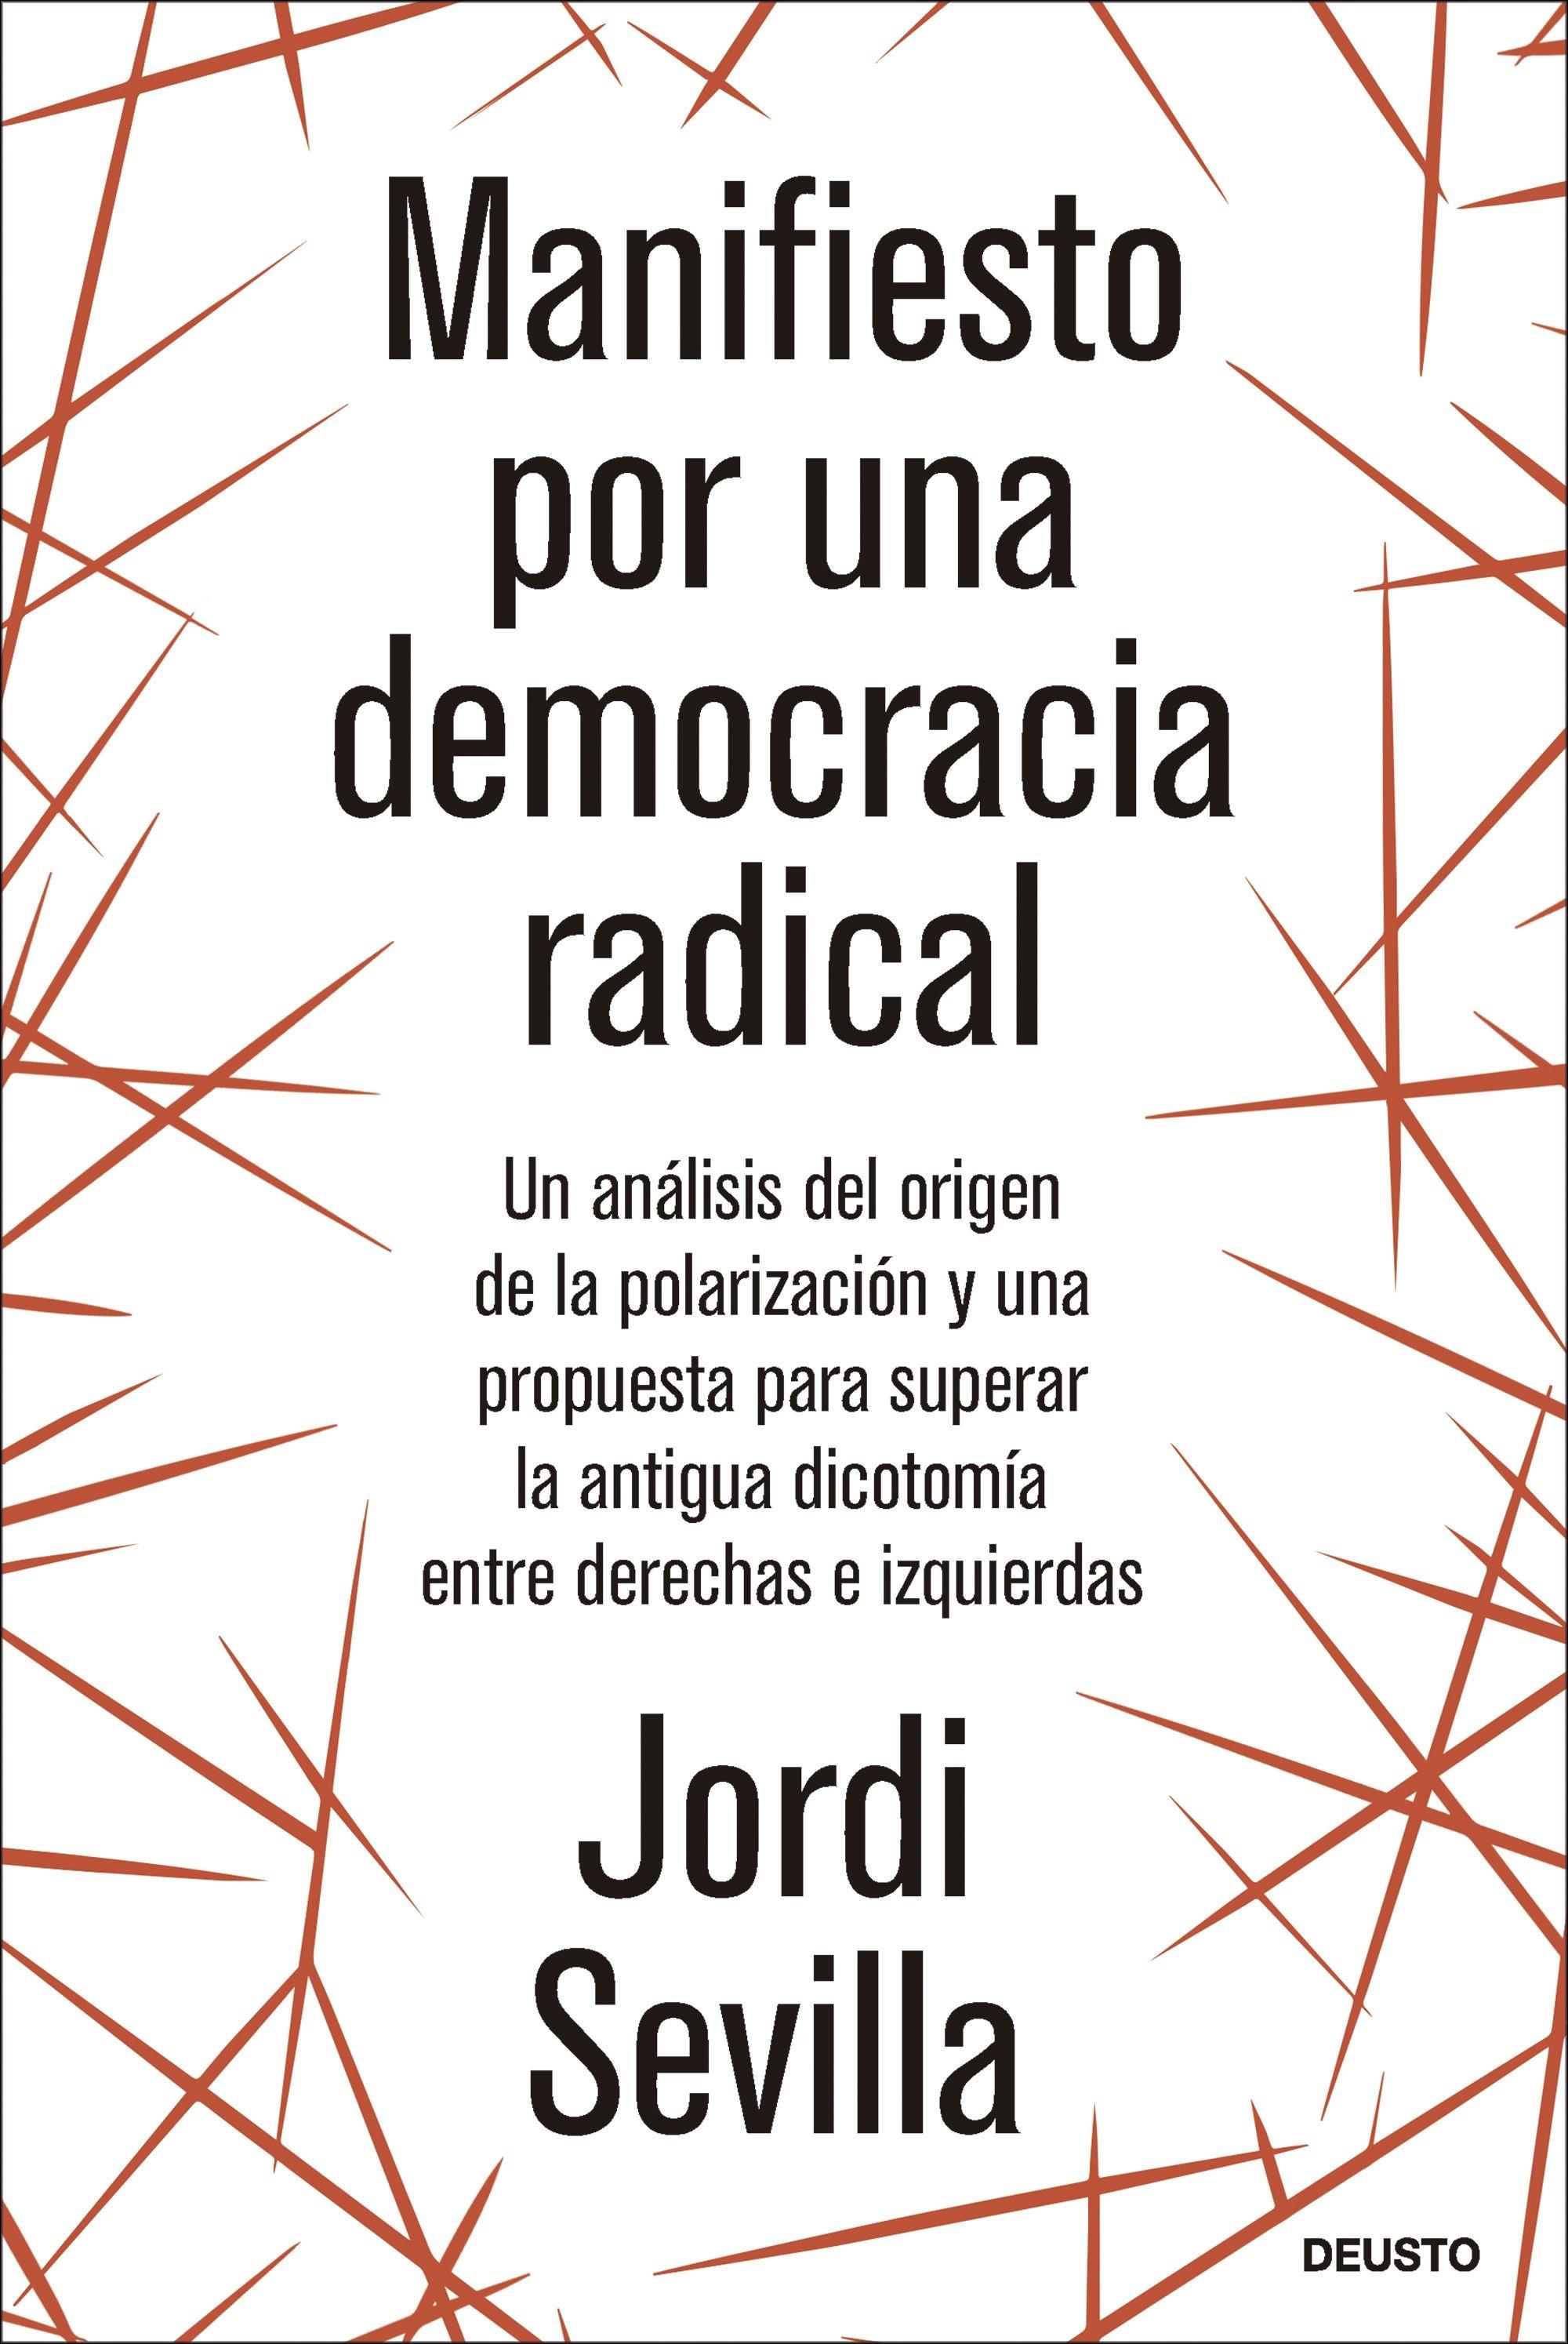 Manifiesto por una Democracia Radical "Un Análisis del Origen de la Polarización y una Propuesta para Superar L"